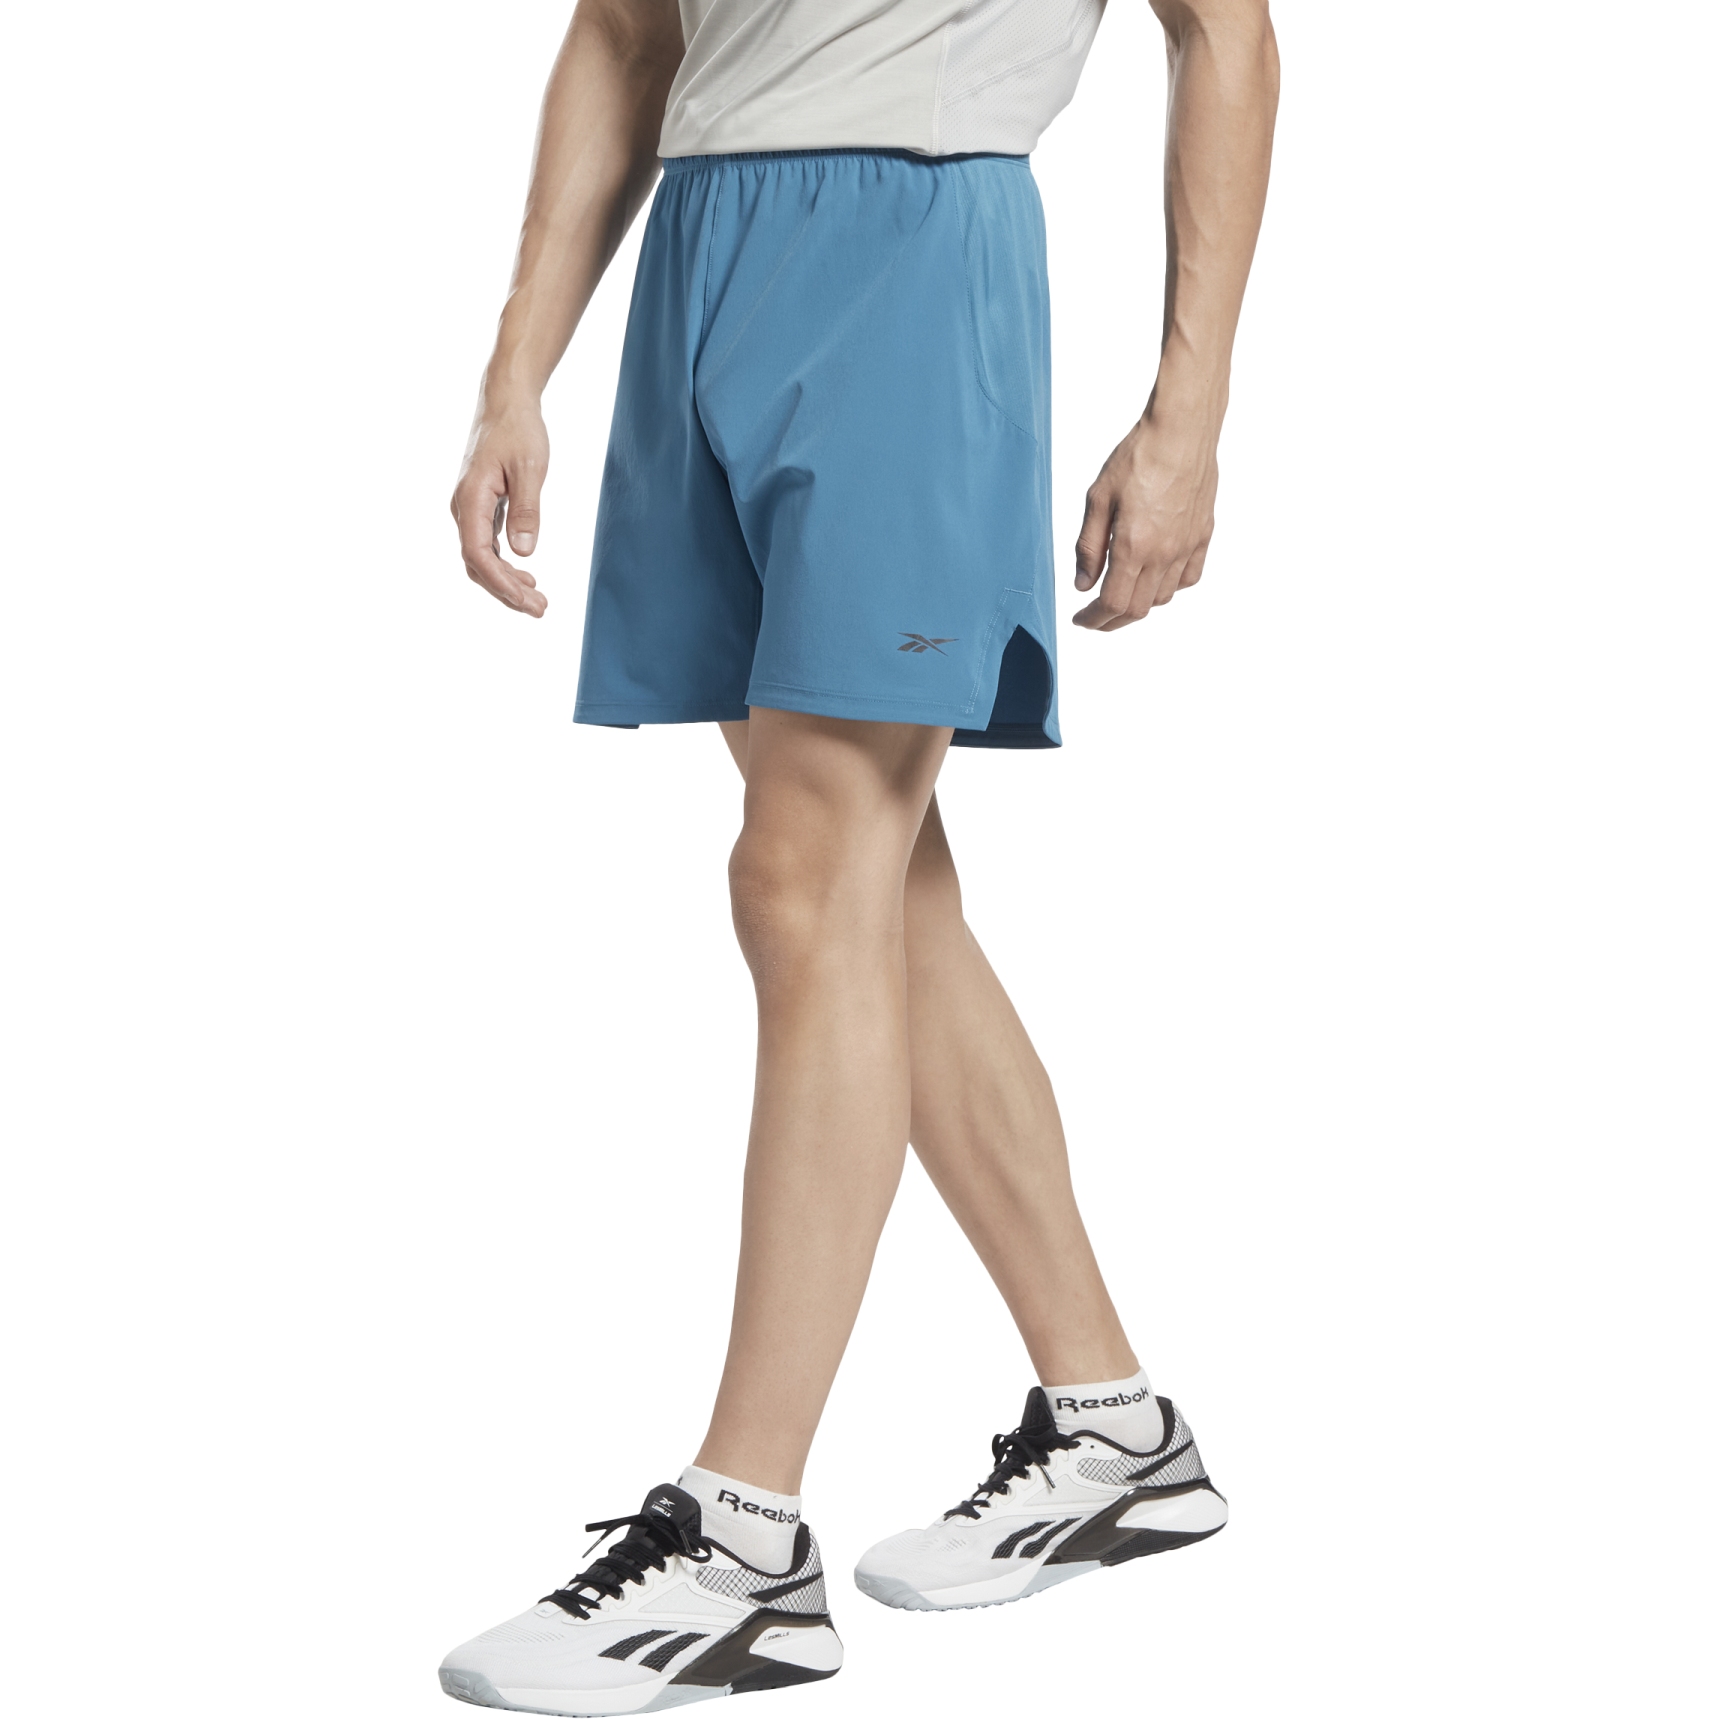 Productfoto van Reebok Strength 3.0 Shorts Heren - steely blue